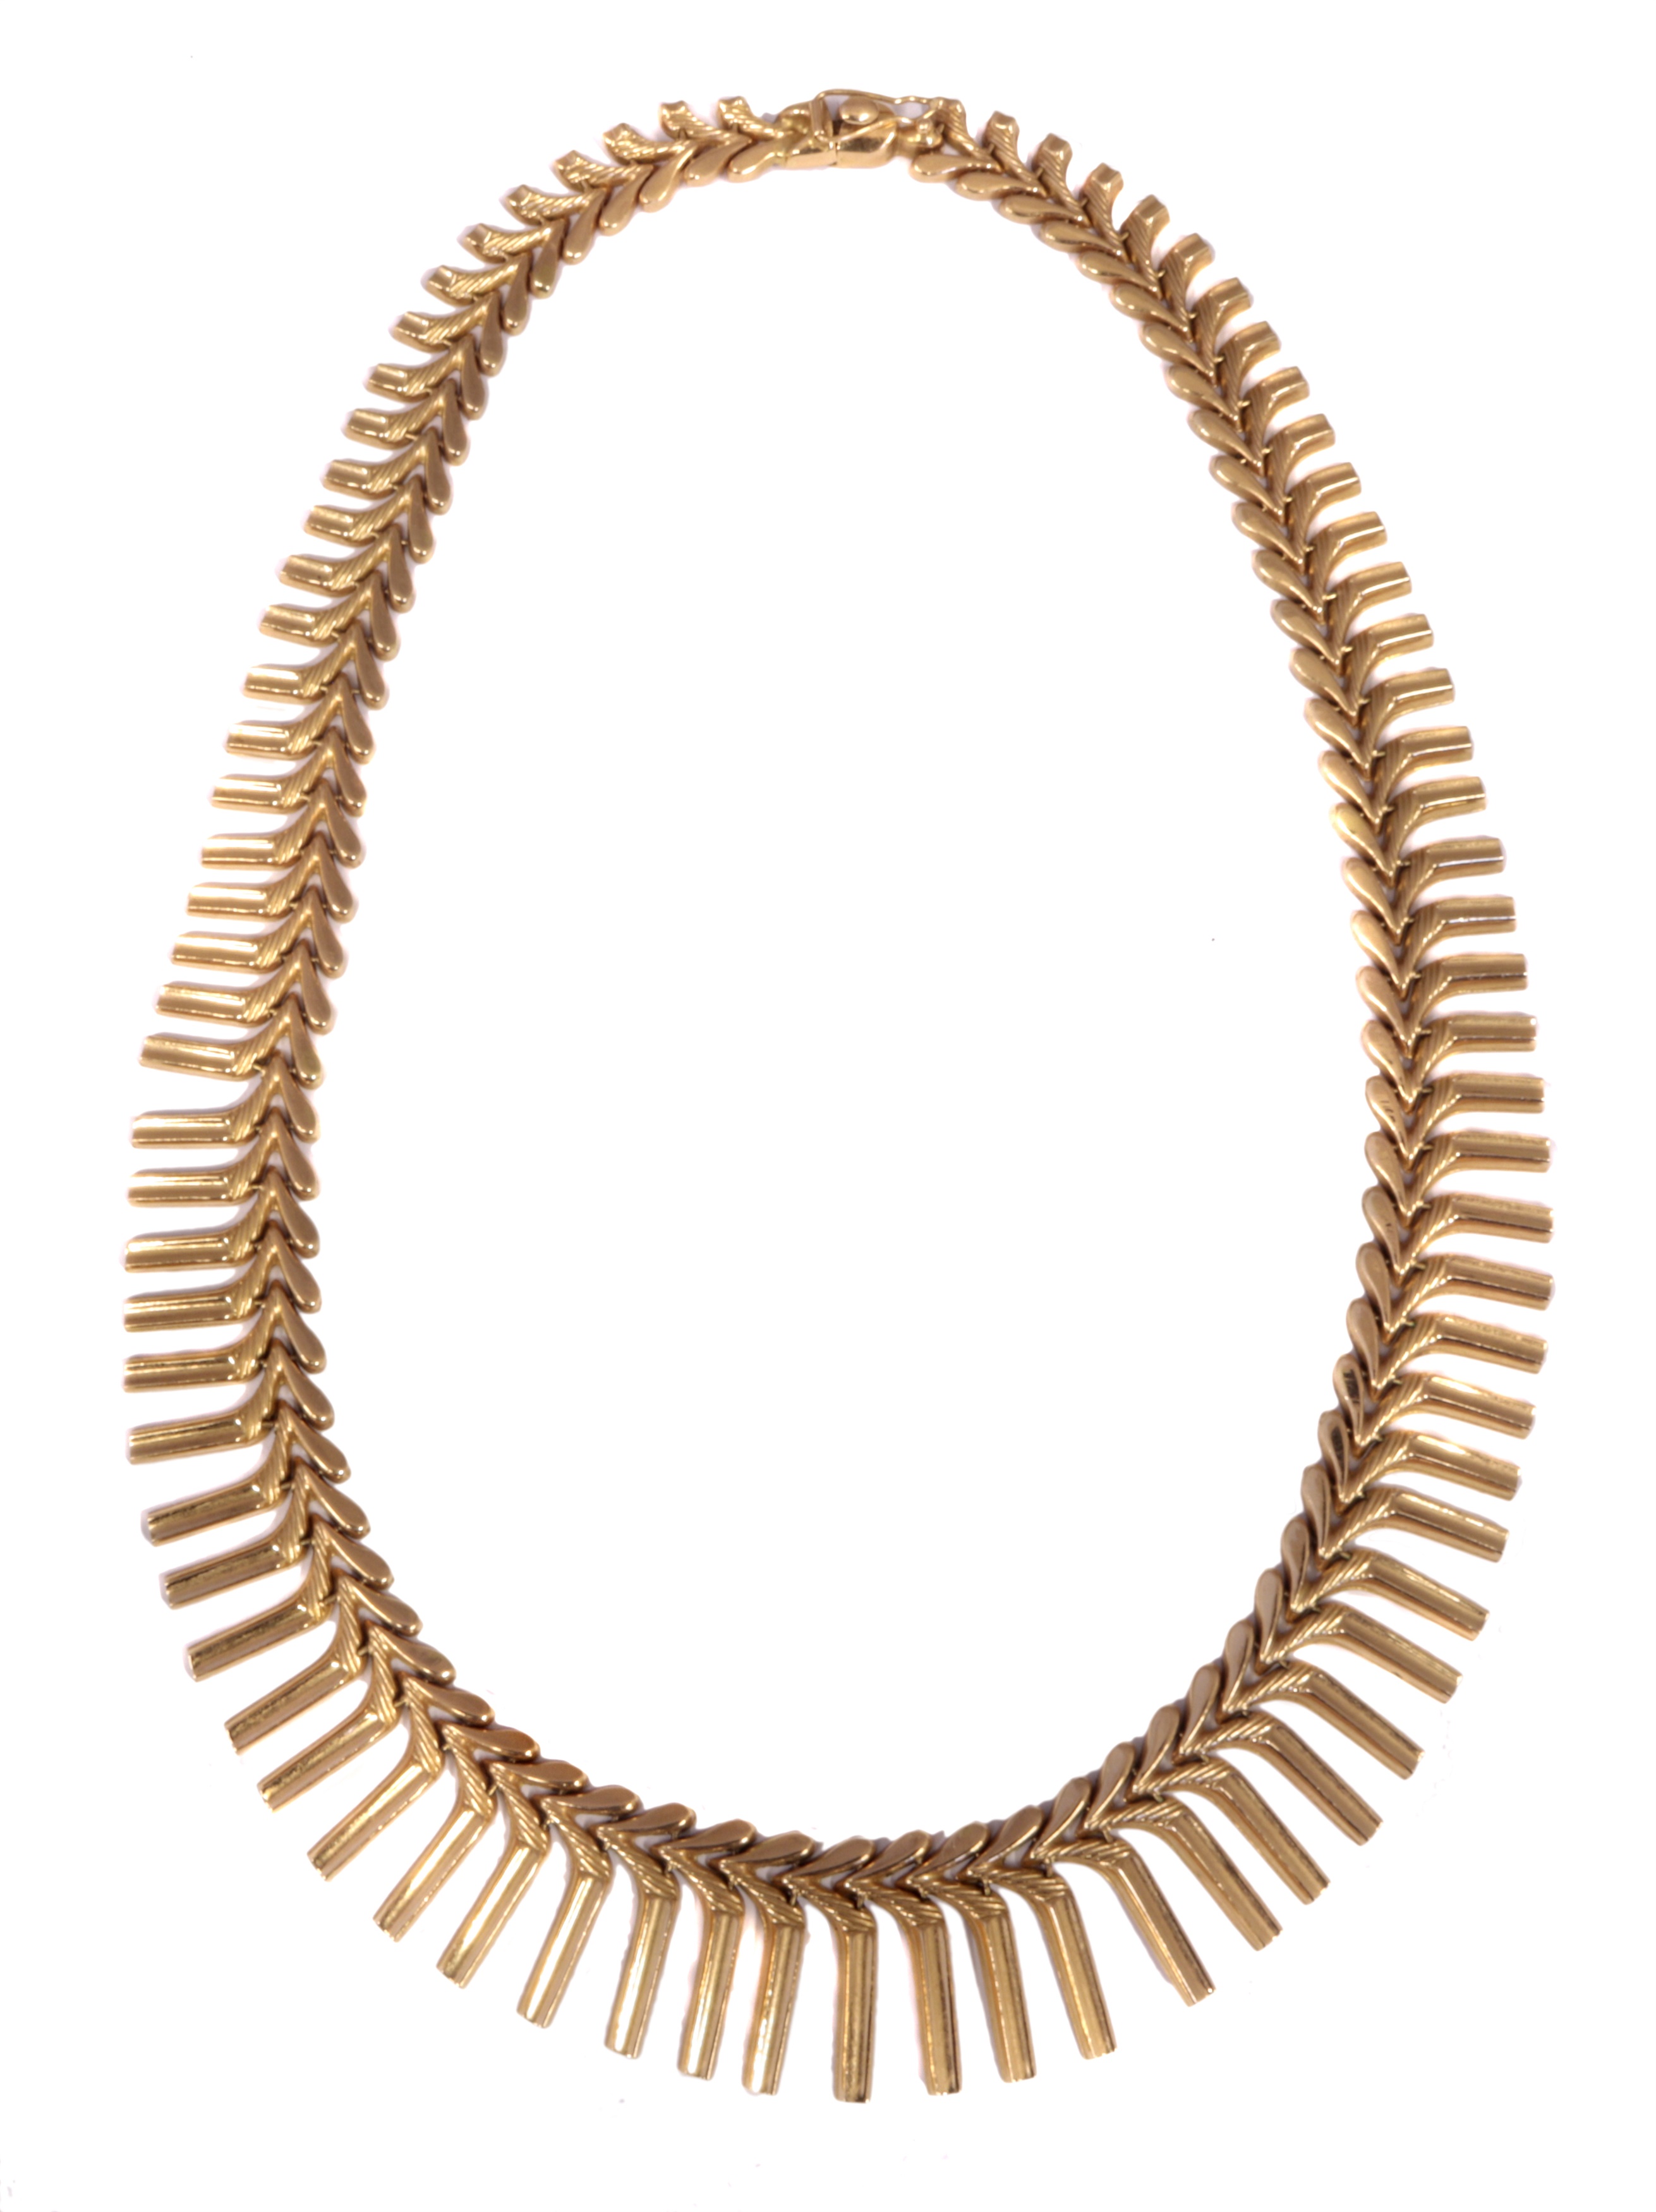 A fringe necklace,